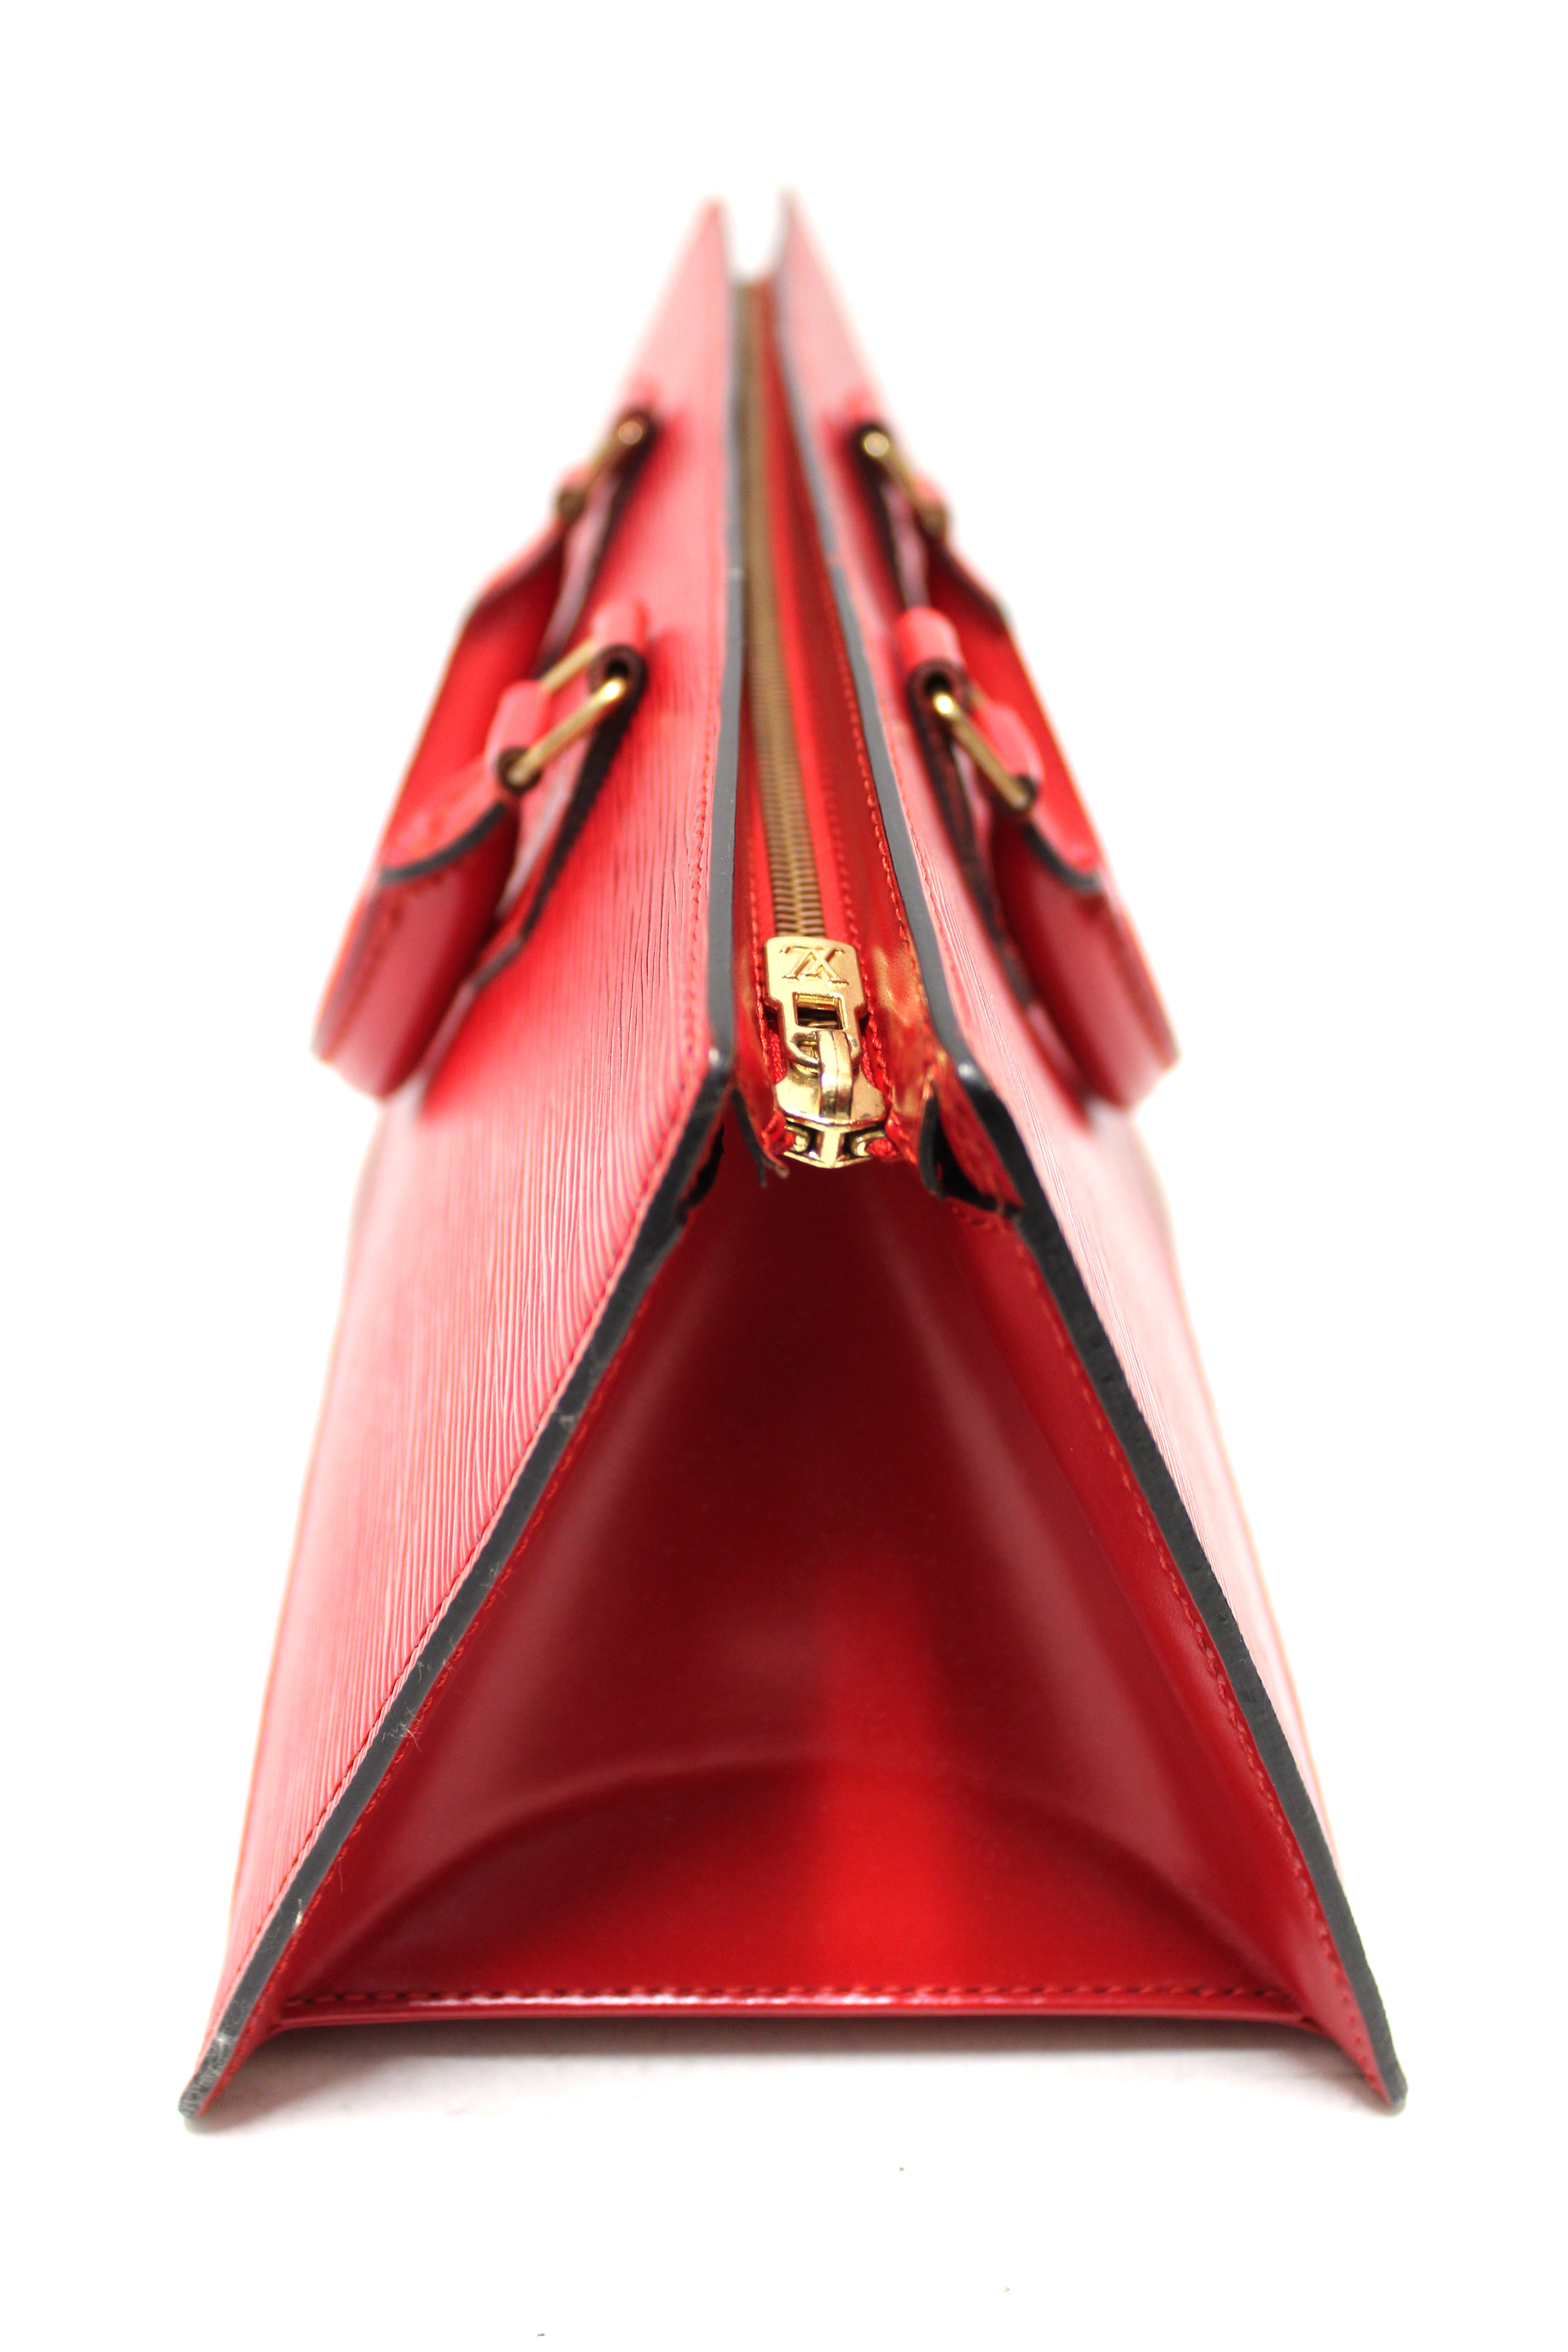 Louis Vuitton Yellow Epi Leather Sac Triangle Bag.  Luxury